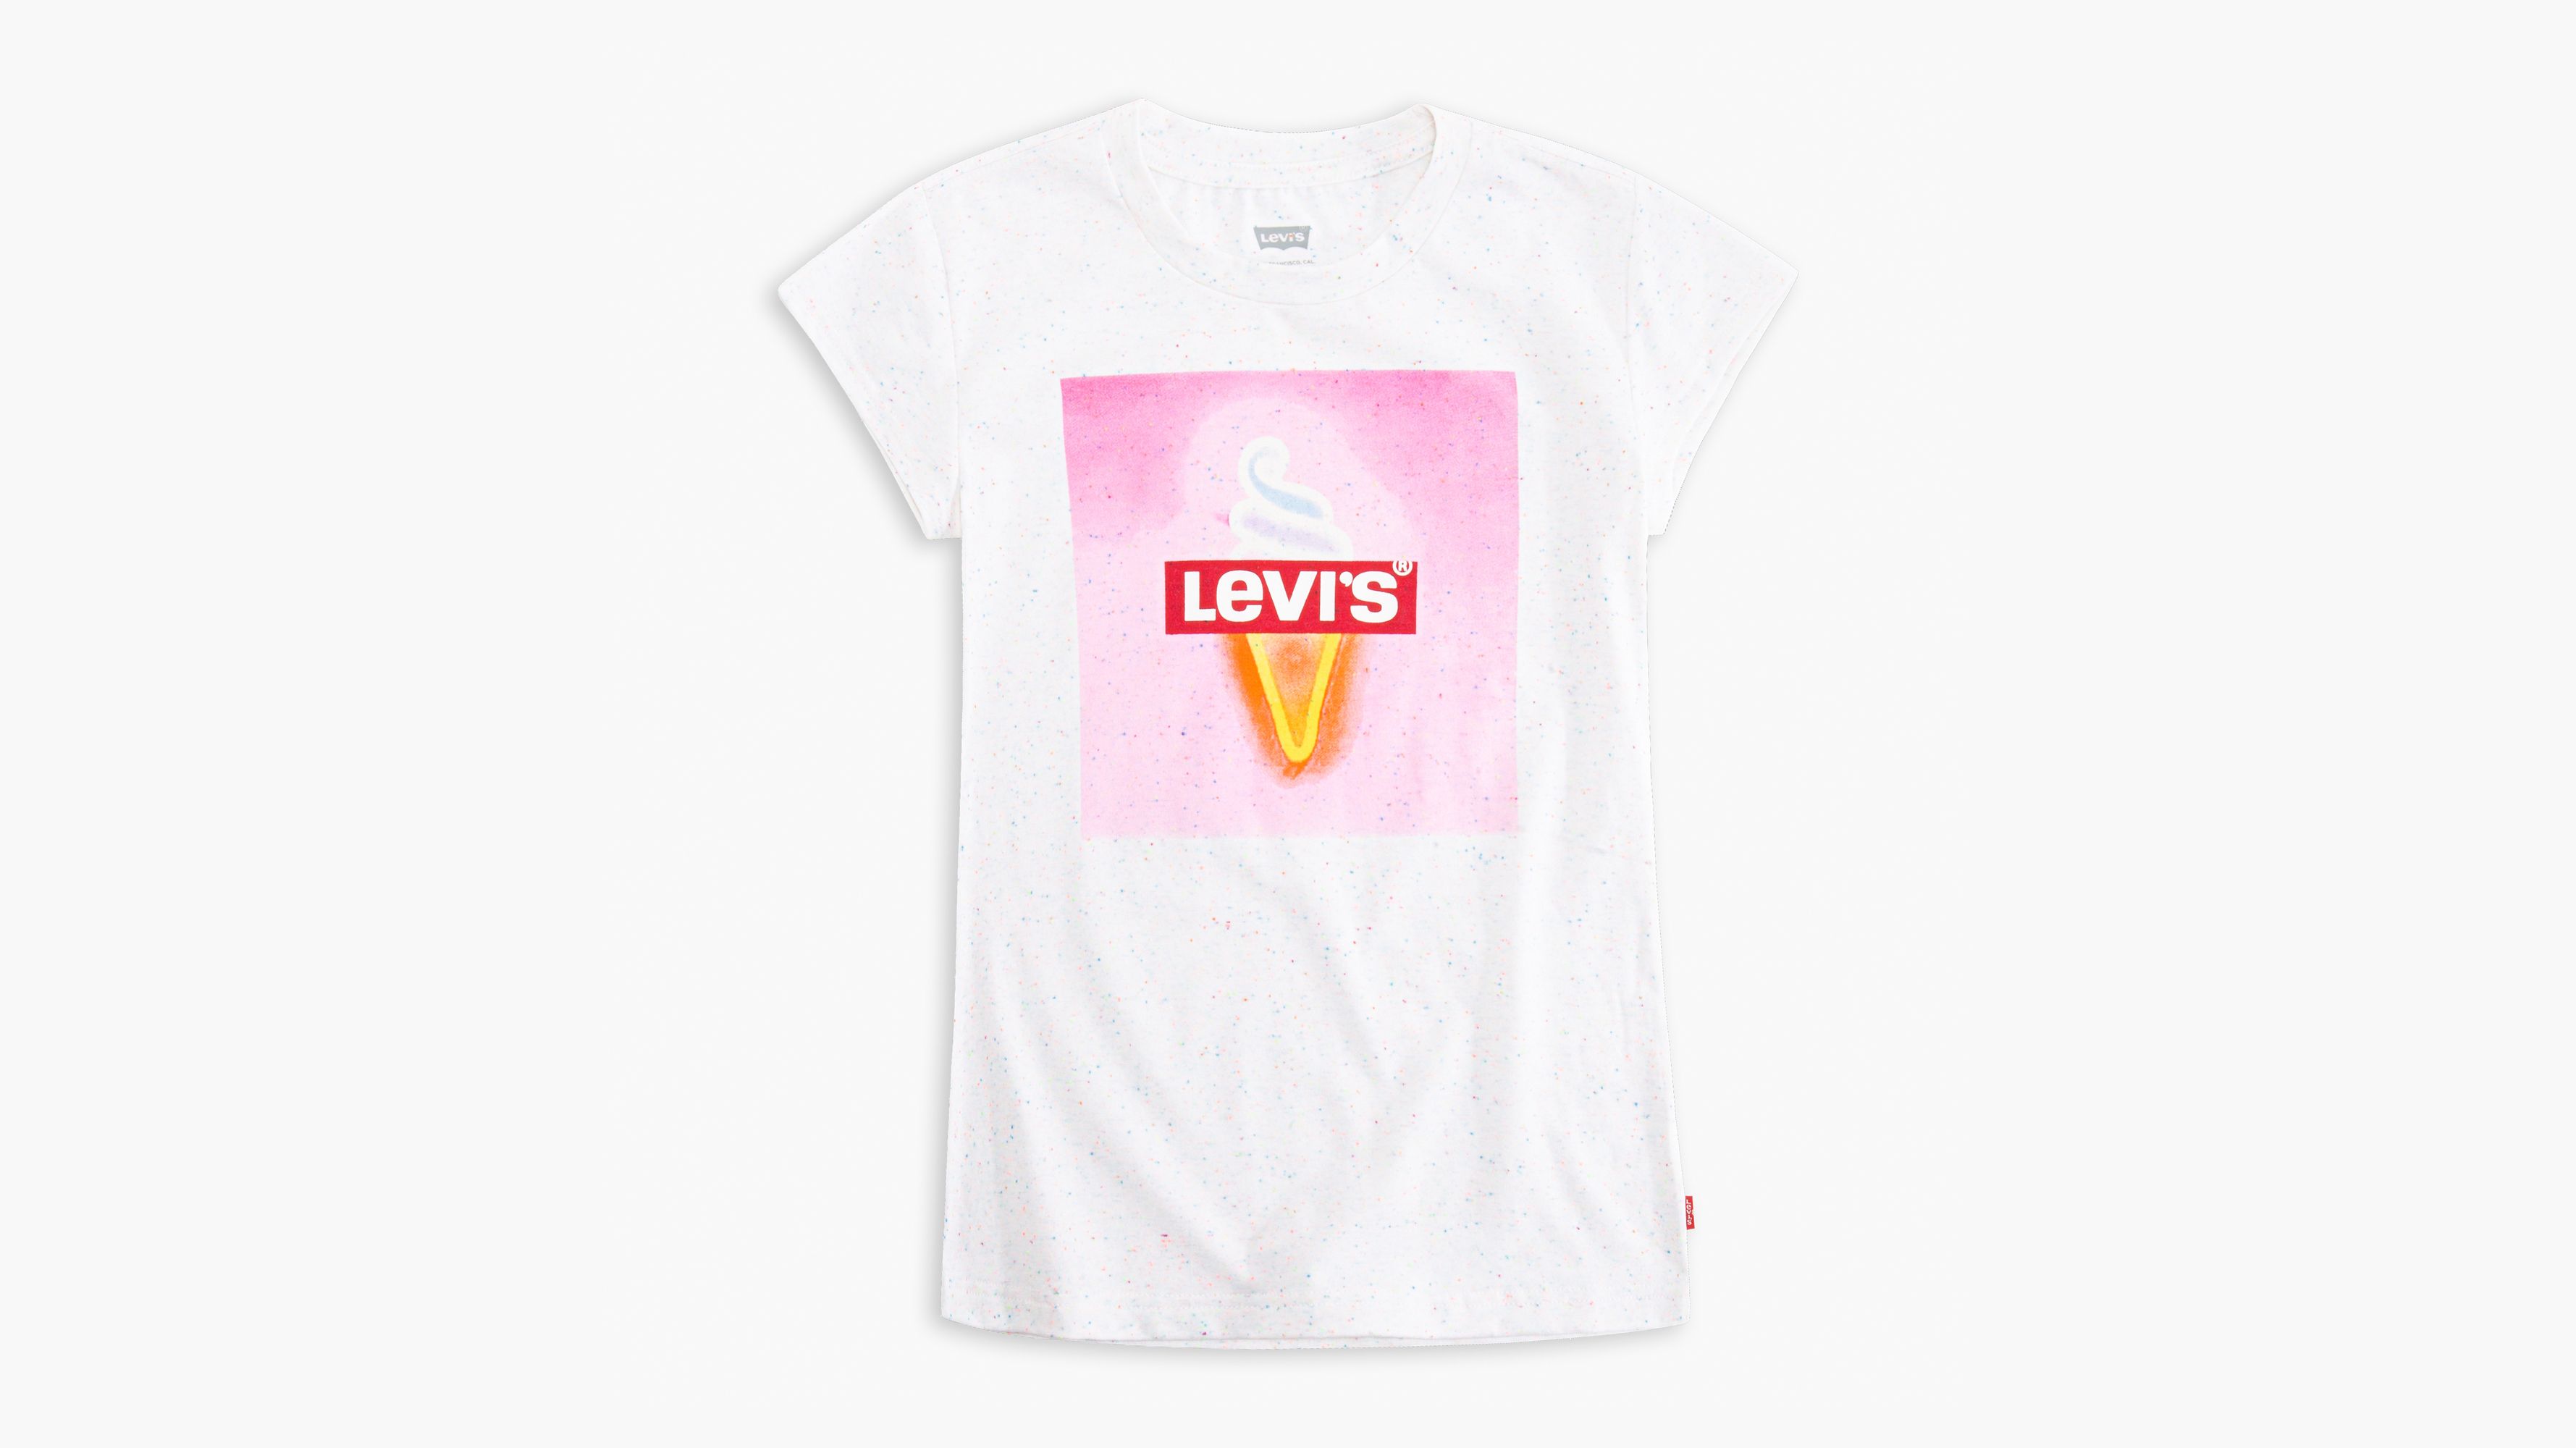 levis girls tshirt